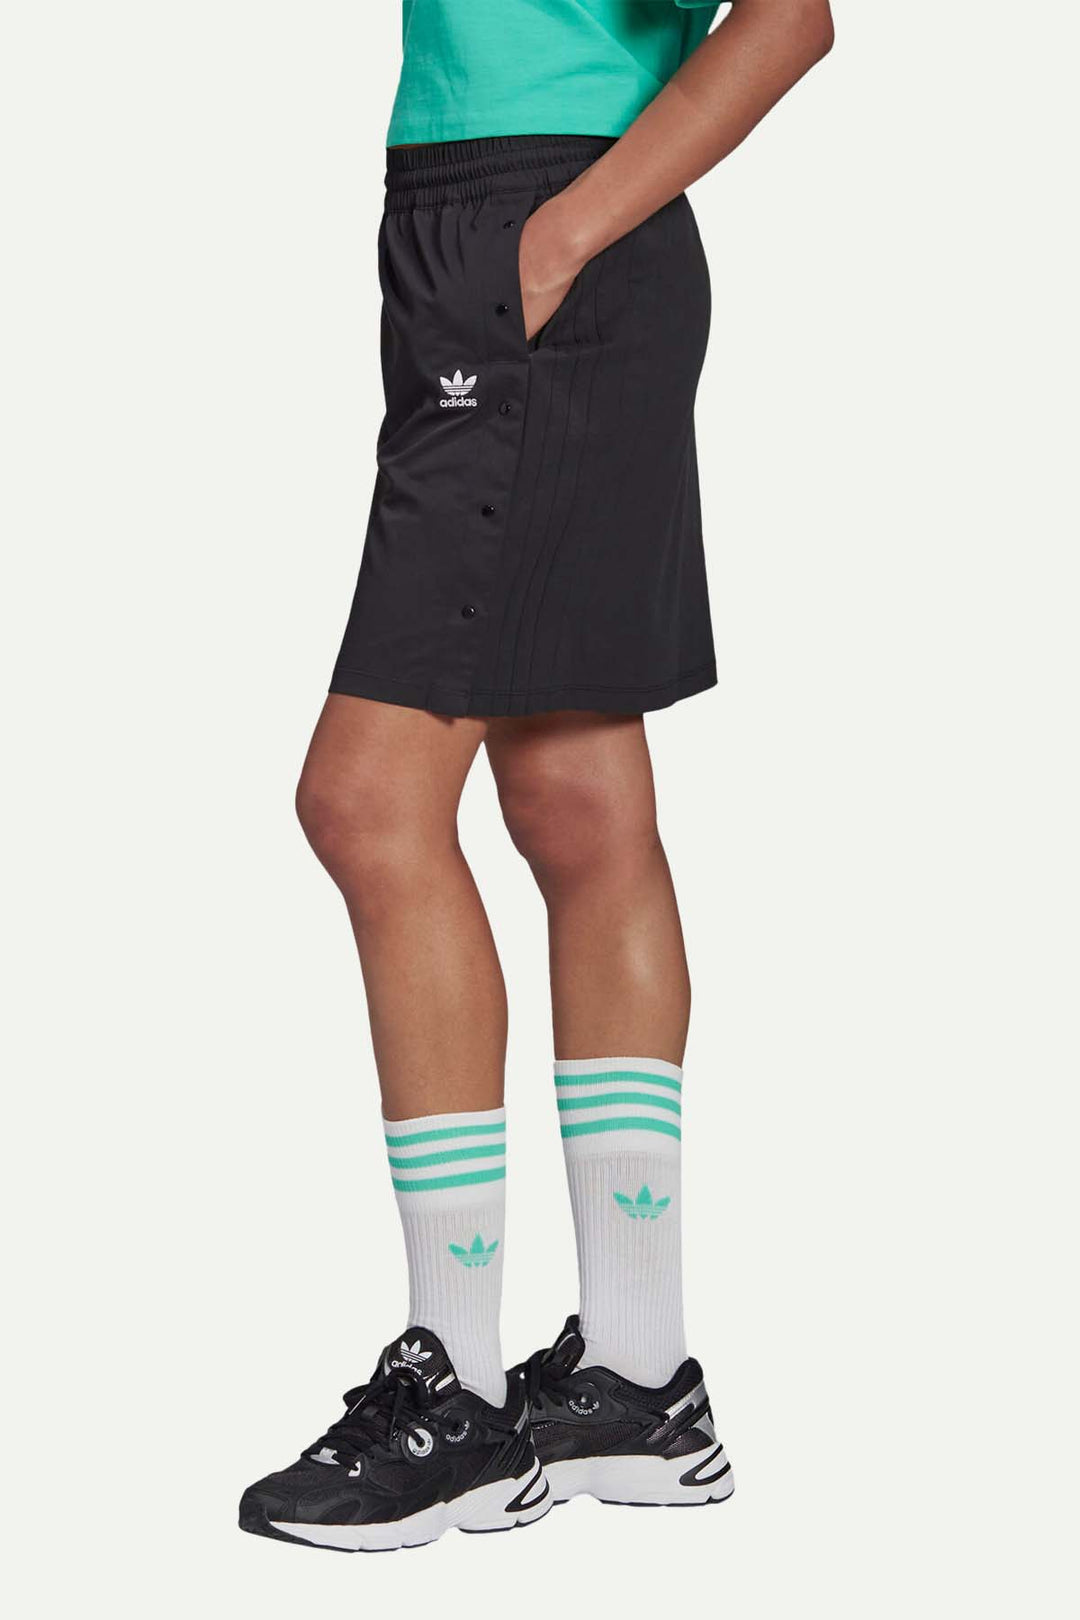 חצאית מיני שחורה עם תיקתקים - Adidas